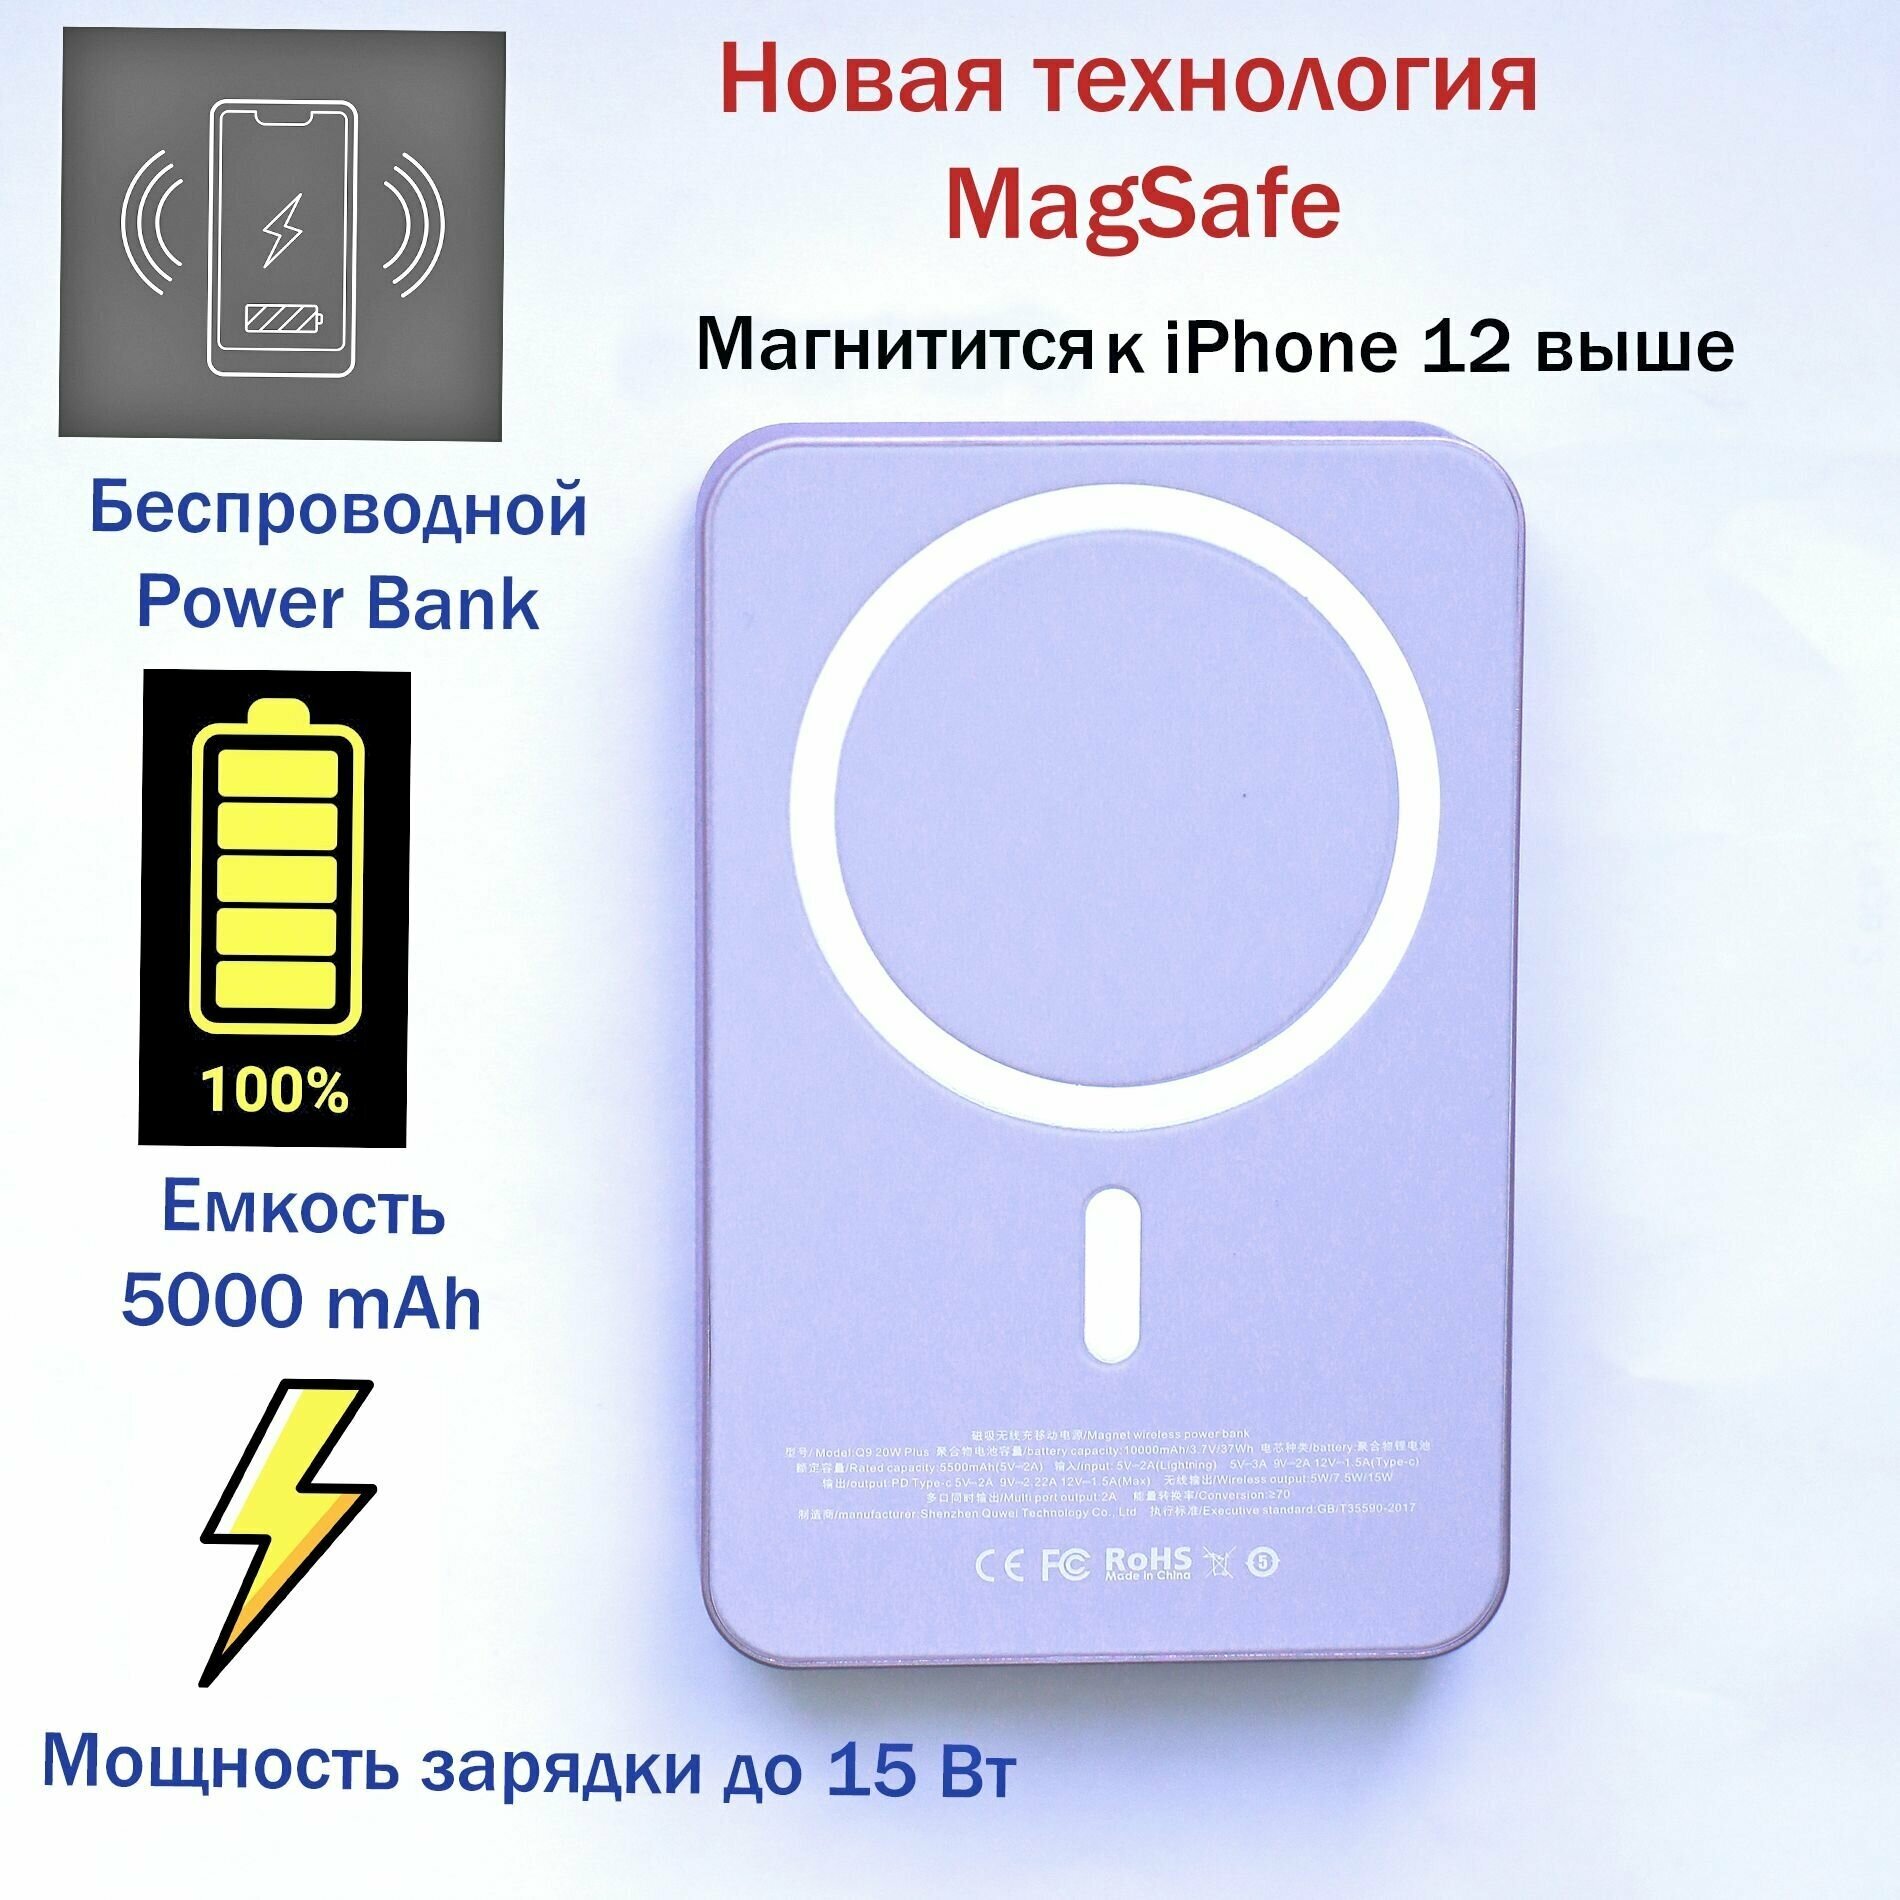 Беспроводной PowerBank, беспроводная зарядка iphone, магнитный повербанк